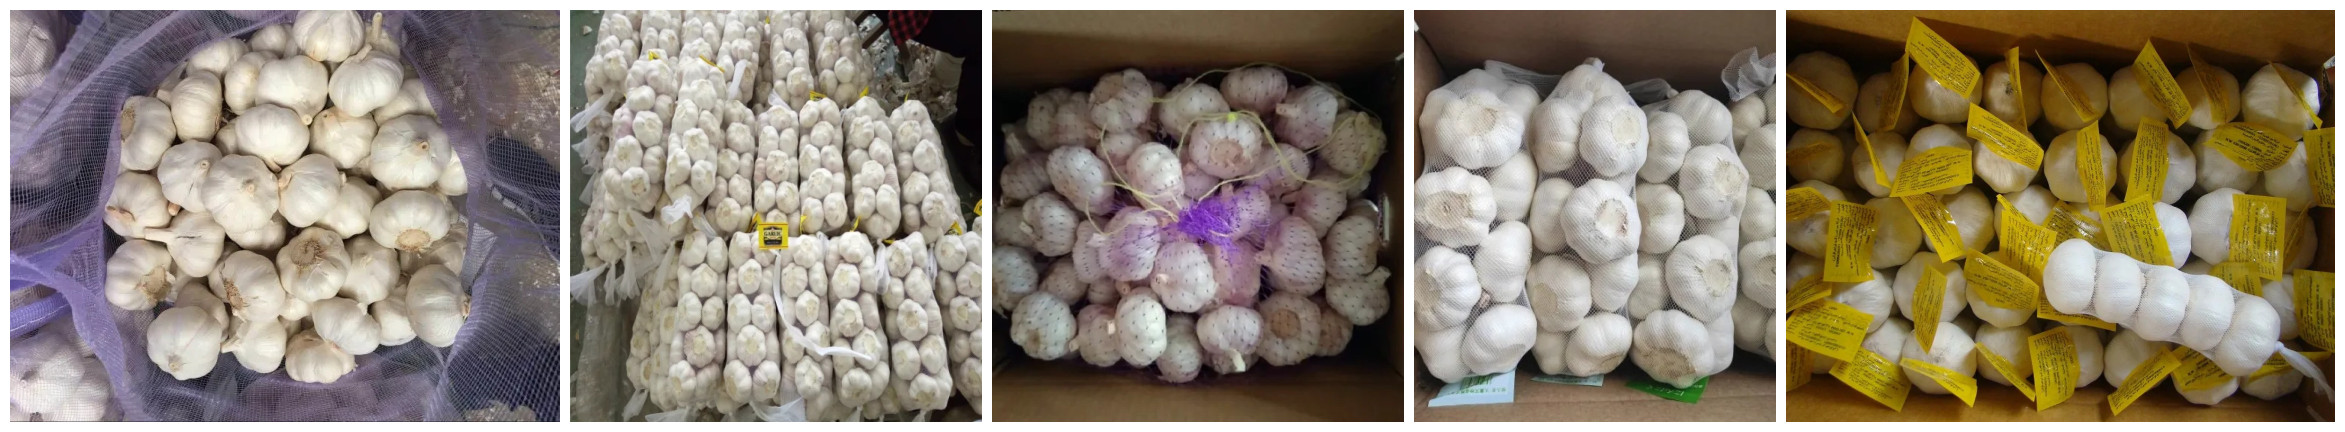 garlic packing